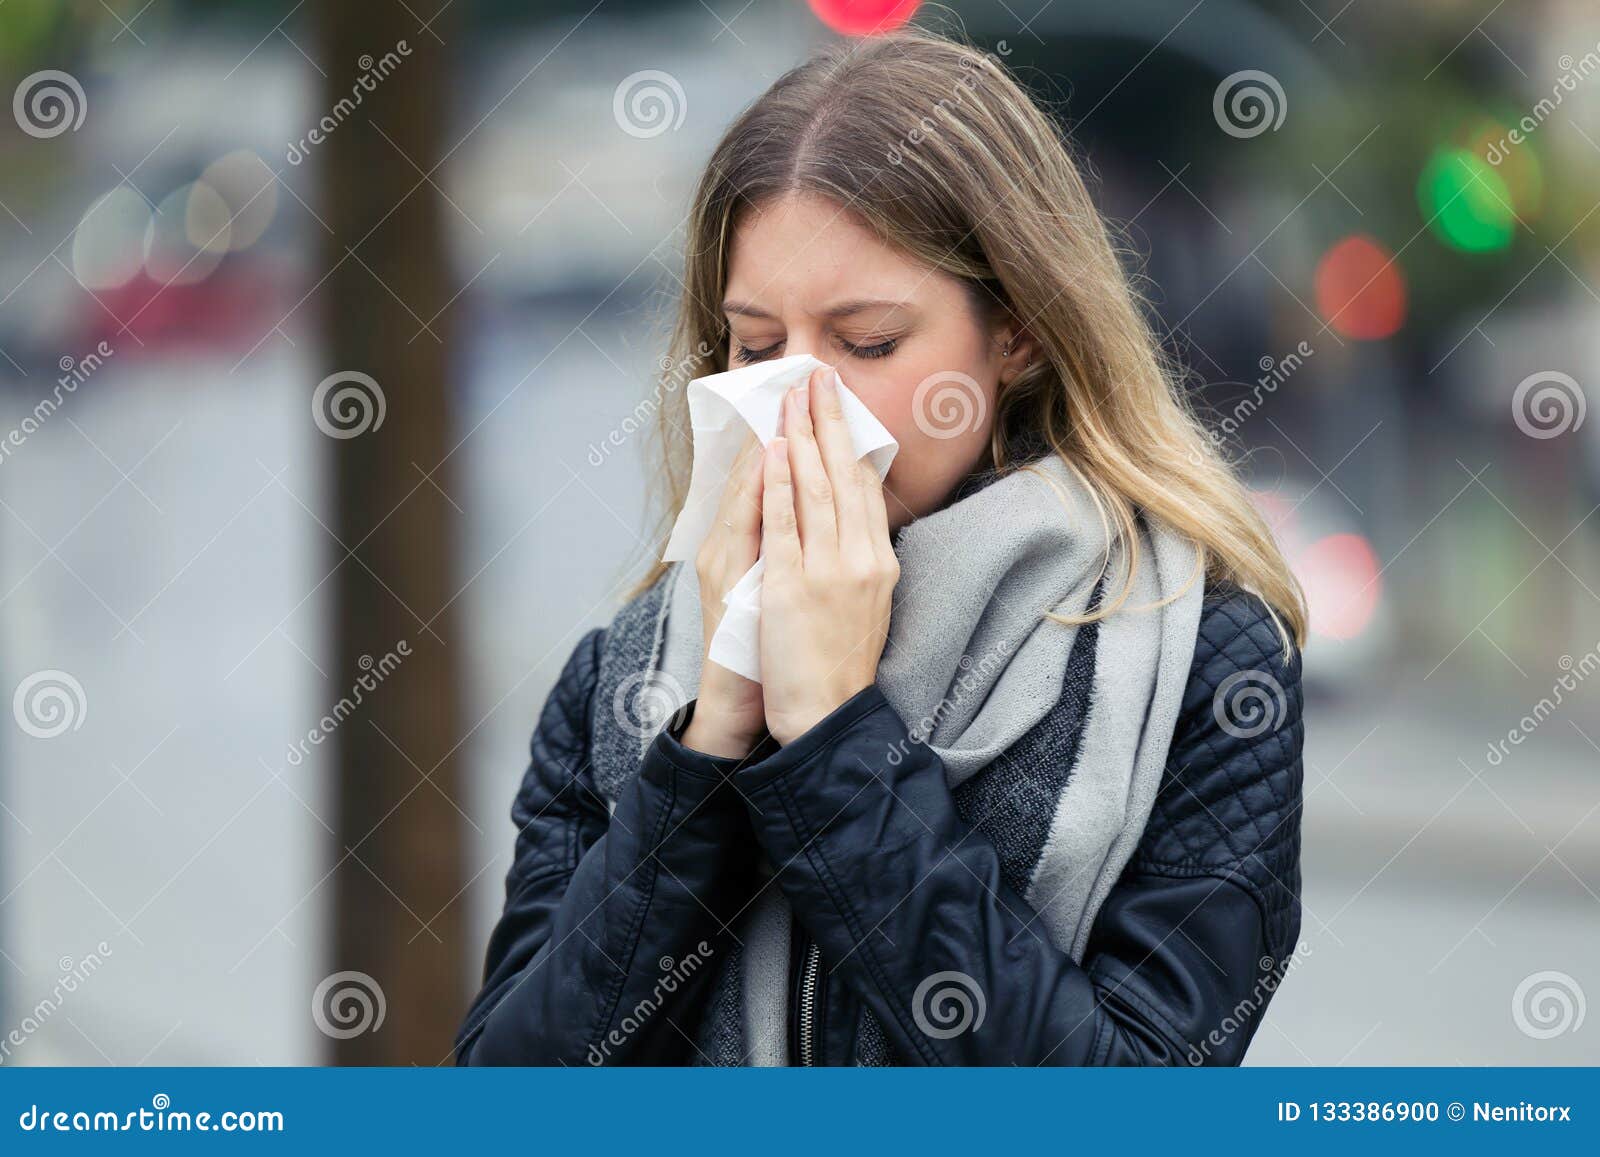 春天 患有流感或过敏症的女人对着她的手帕打喷嚏人物形象免费下载_jpg格式_3744像素_编号40593437-千图网